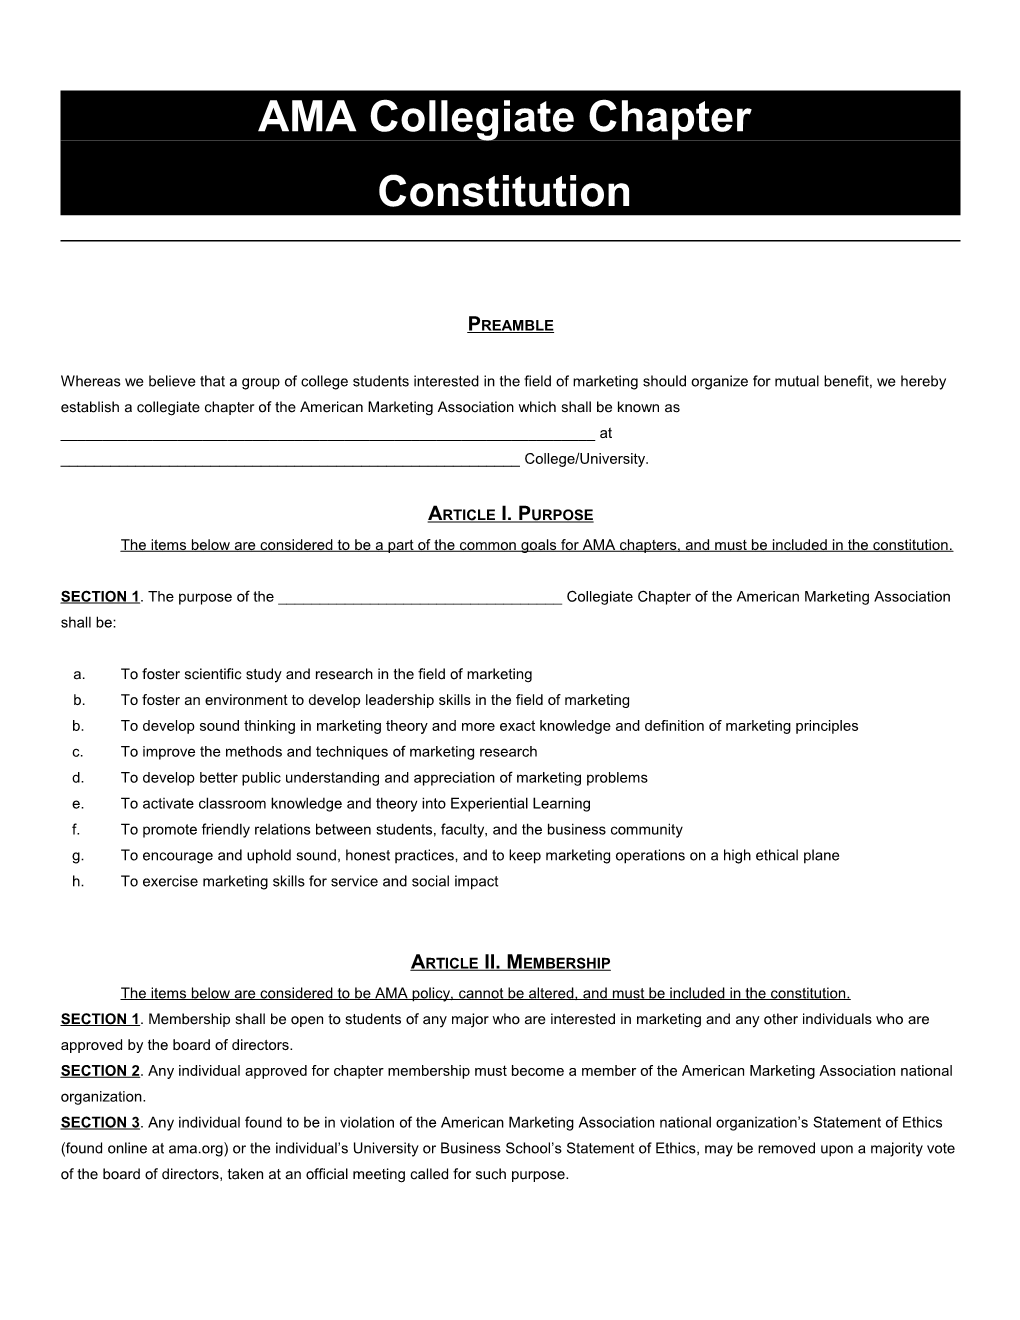 AMA Collegiate Chapter Sample Constitution